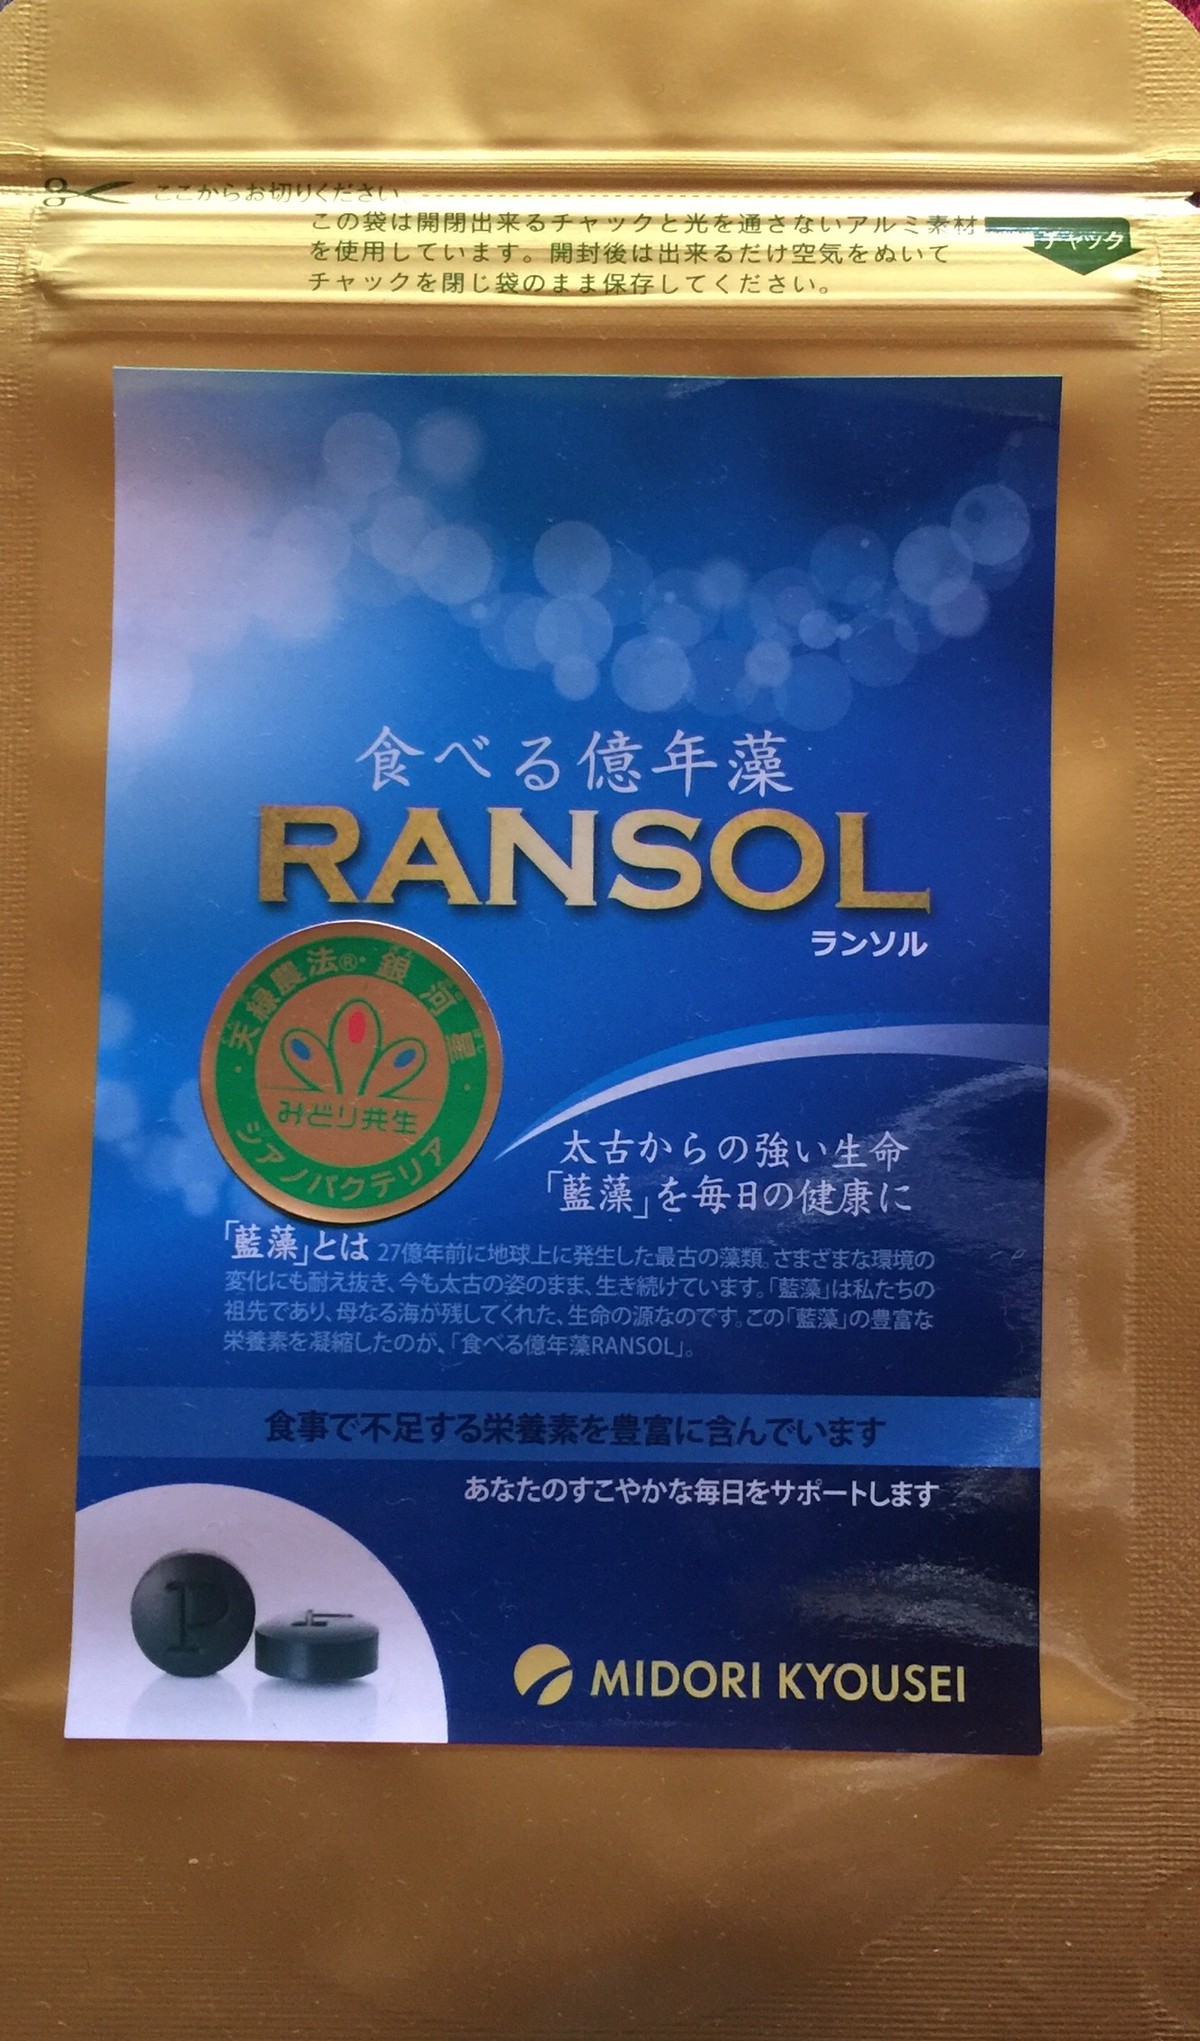 食べる億年藻 Ransol 600粒 パウチタイプ みどり共生 藍藻育ち Shop